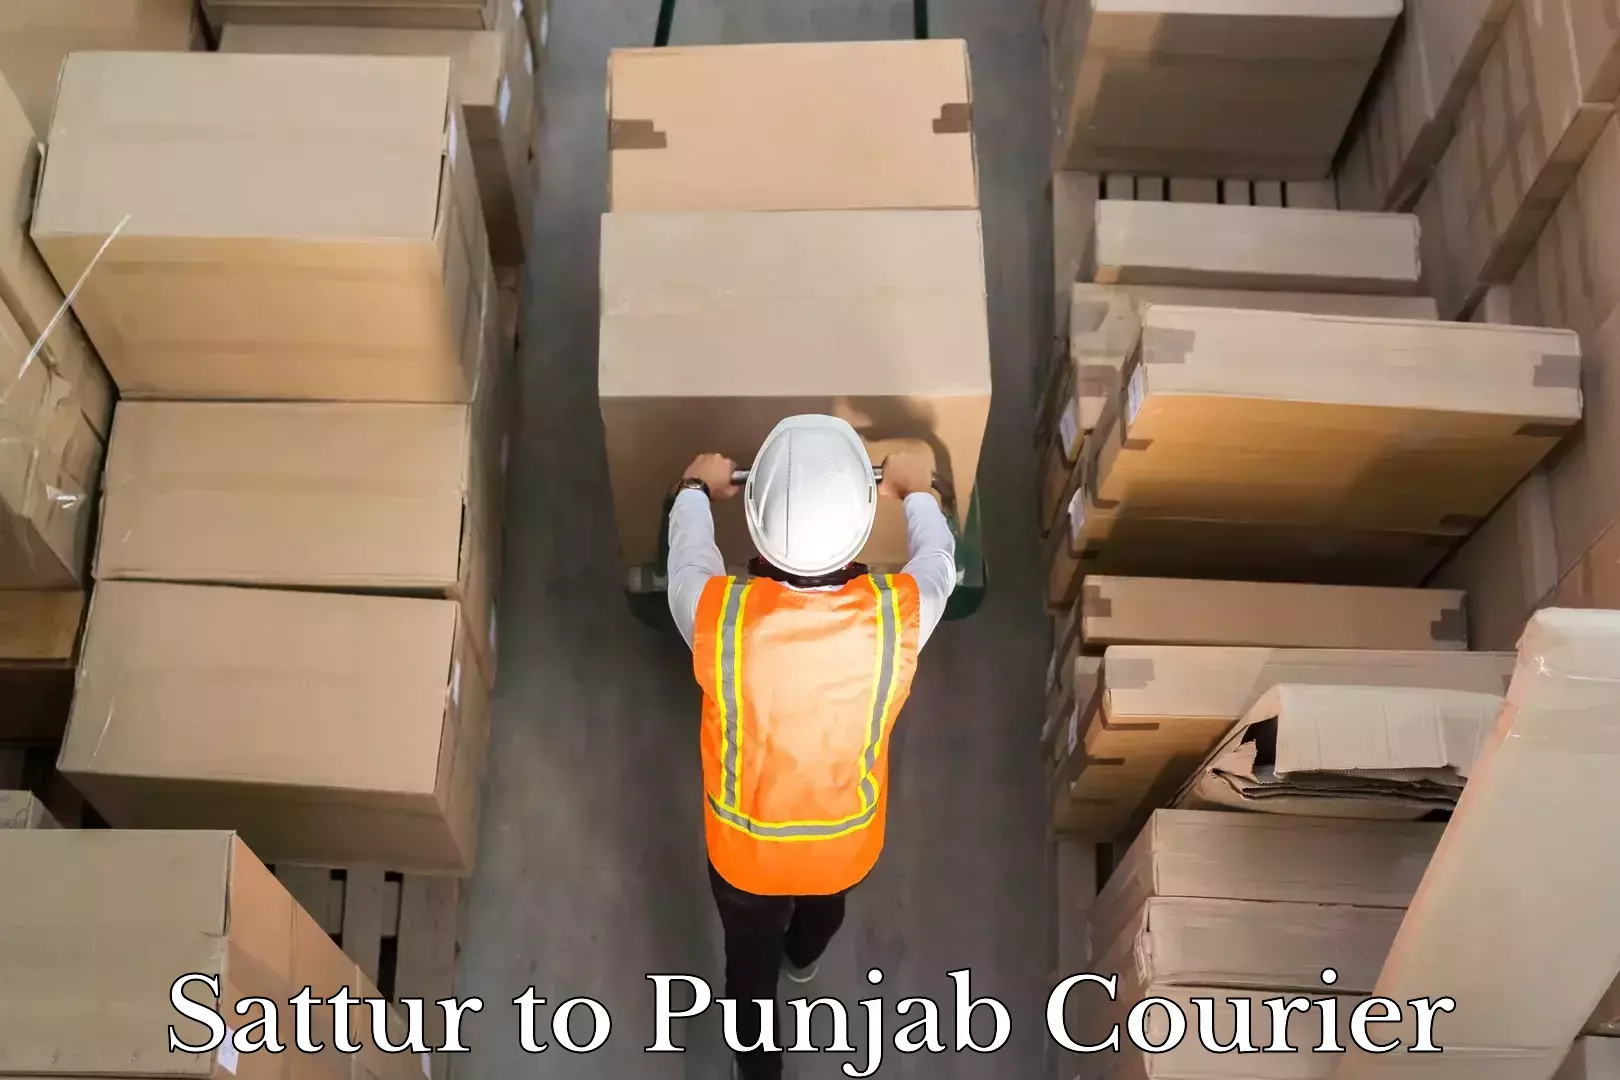 Express package handling in Sattur to Punjab